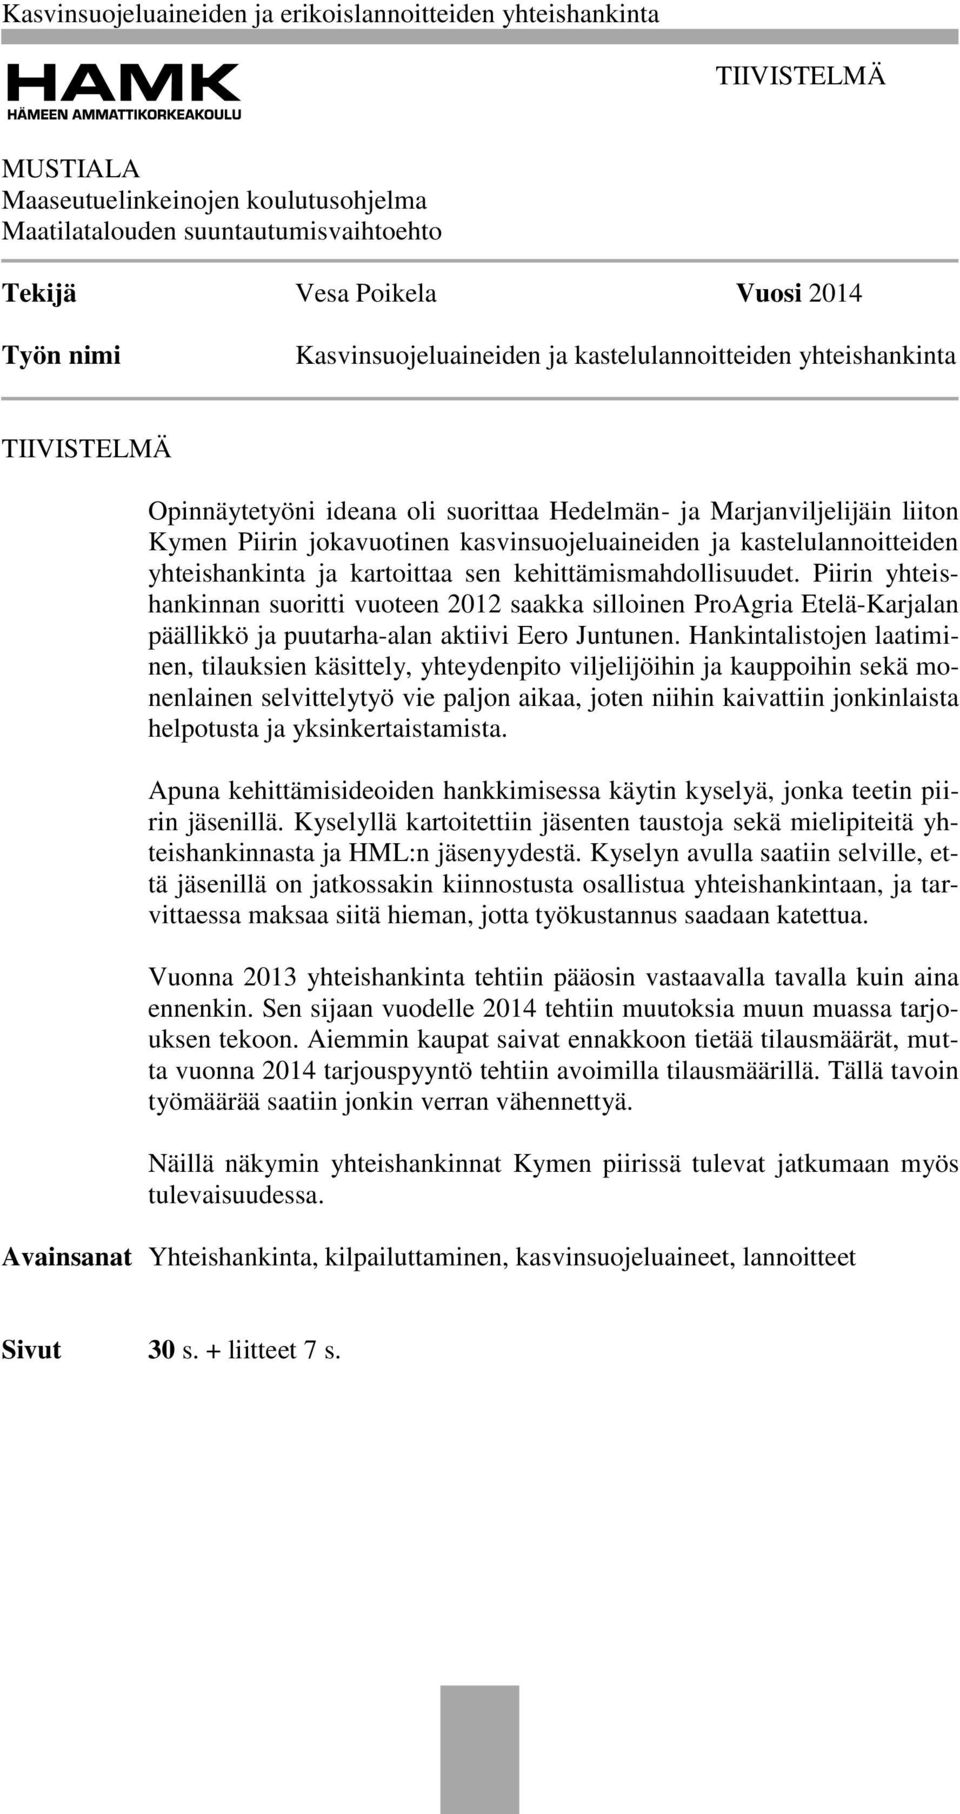 kehittämismahdollisuudet. Piirin yhteishankinnan suoritti vuoteen 2012 saakka silloinen ProAgria Etelä-Karjalan päällikkö ja puutarha-alan aktiivi Eero Juntunen.